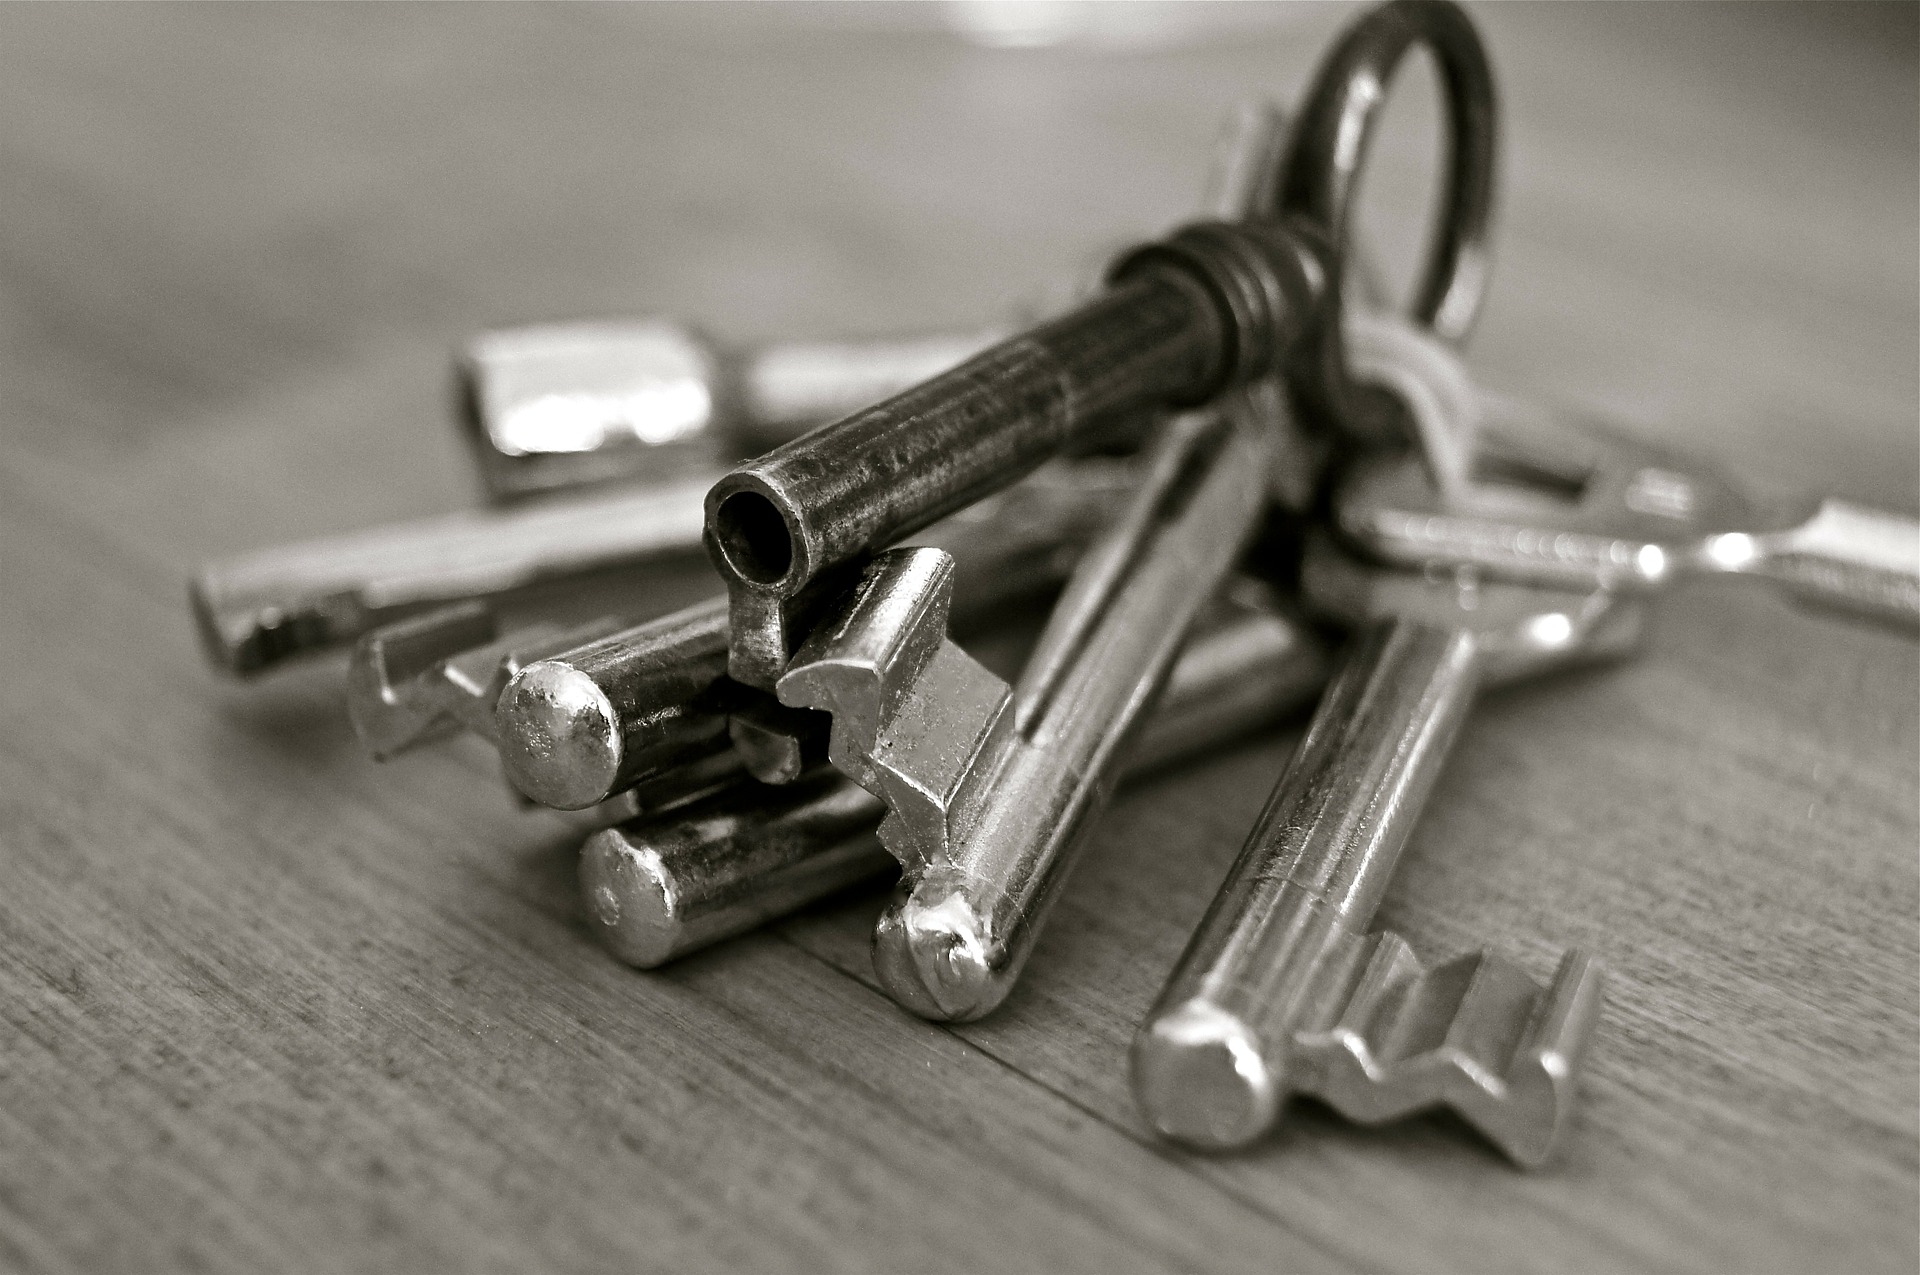 Keys image